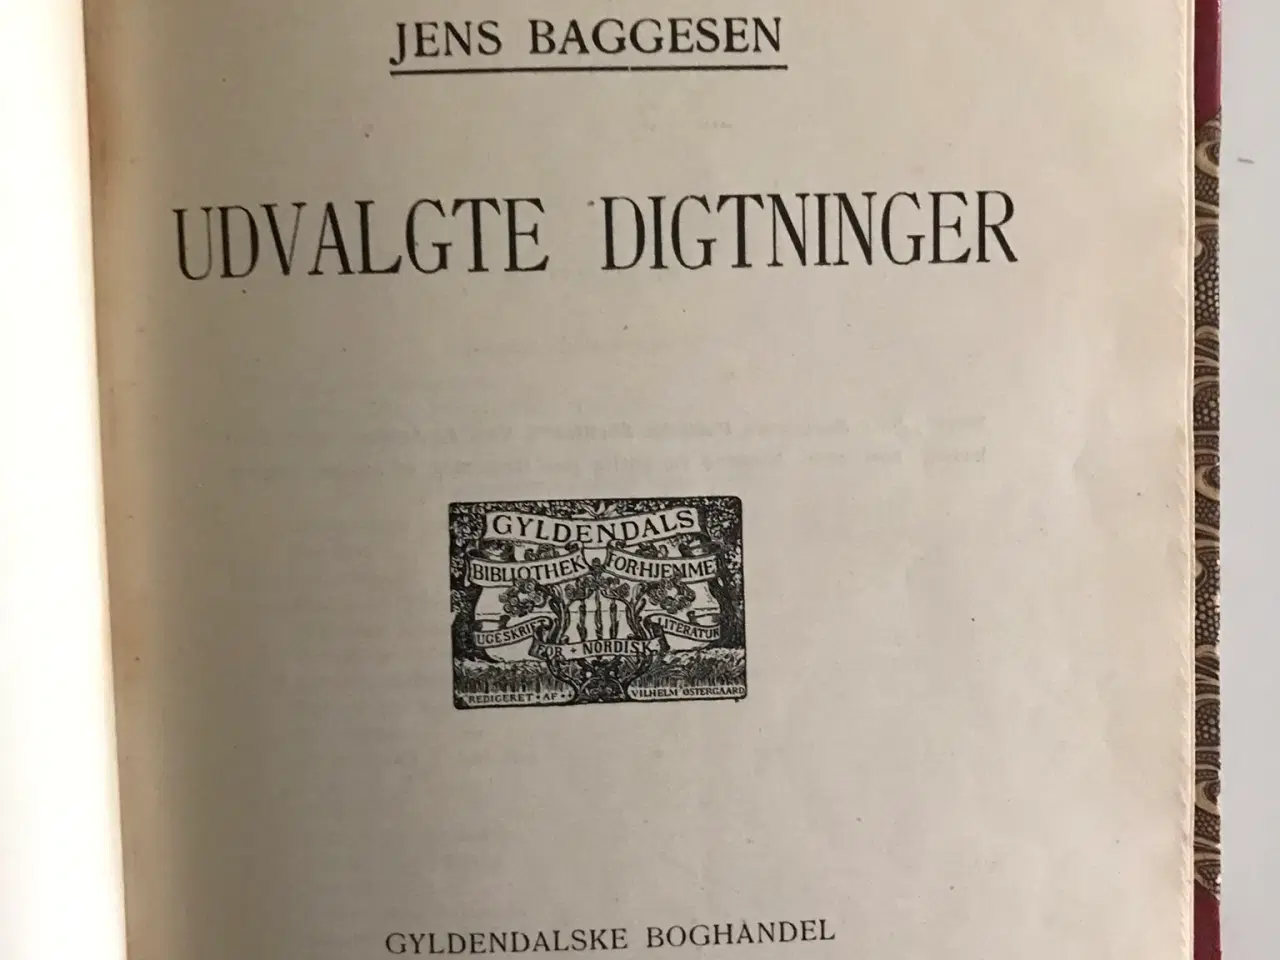 Billede 3 - Jens Baggesen Udvalgte digtninger udgivet 1907